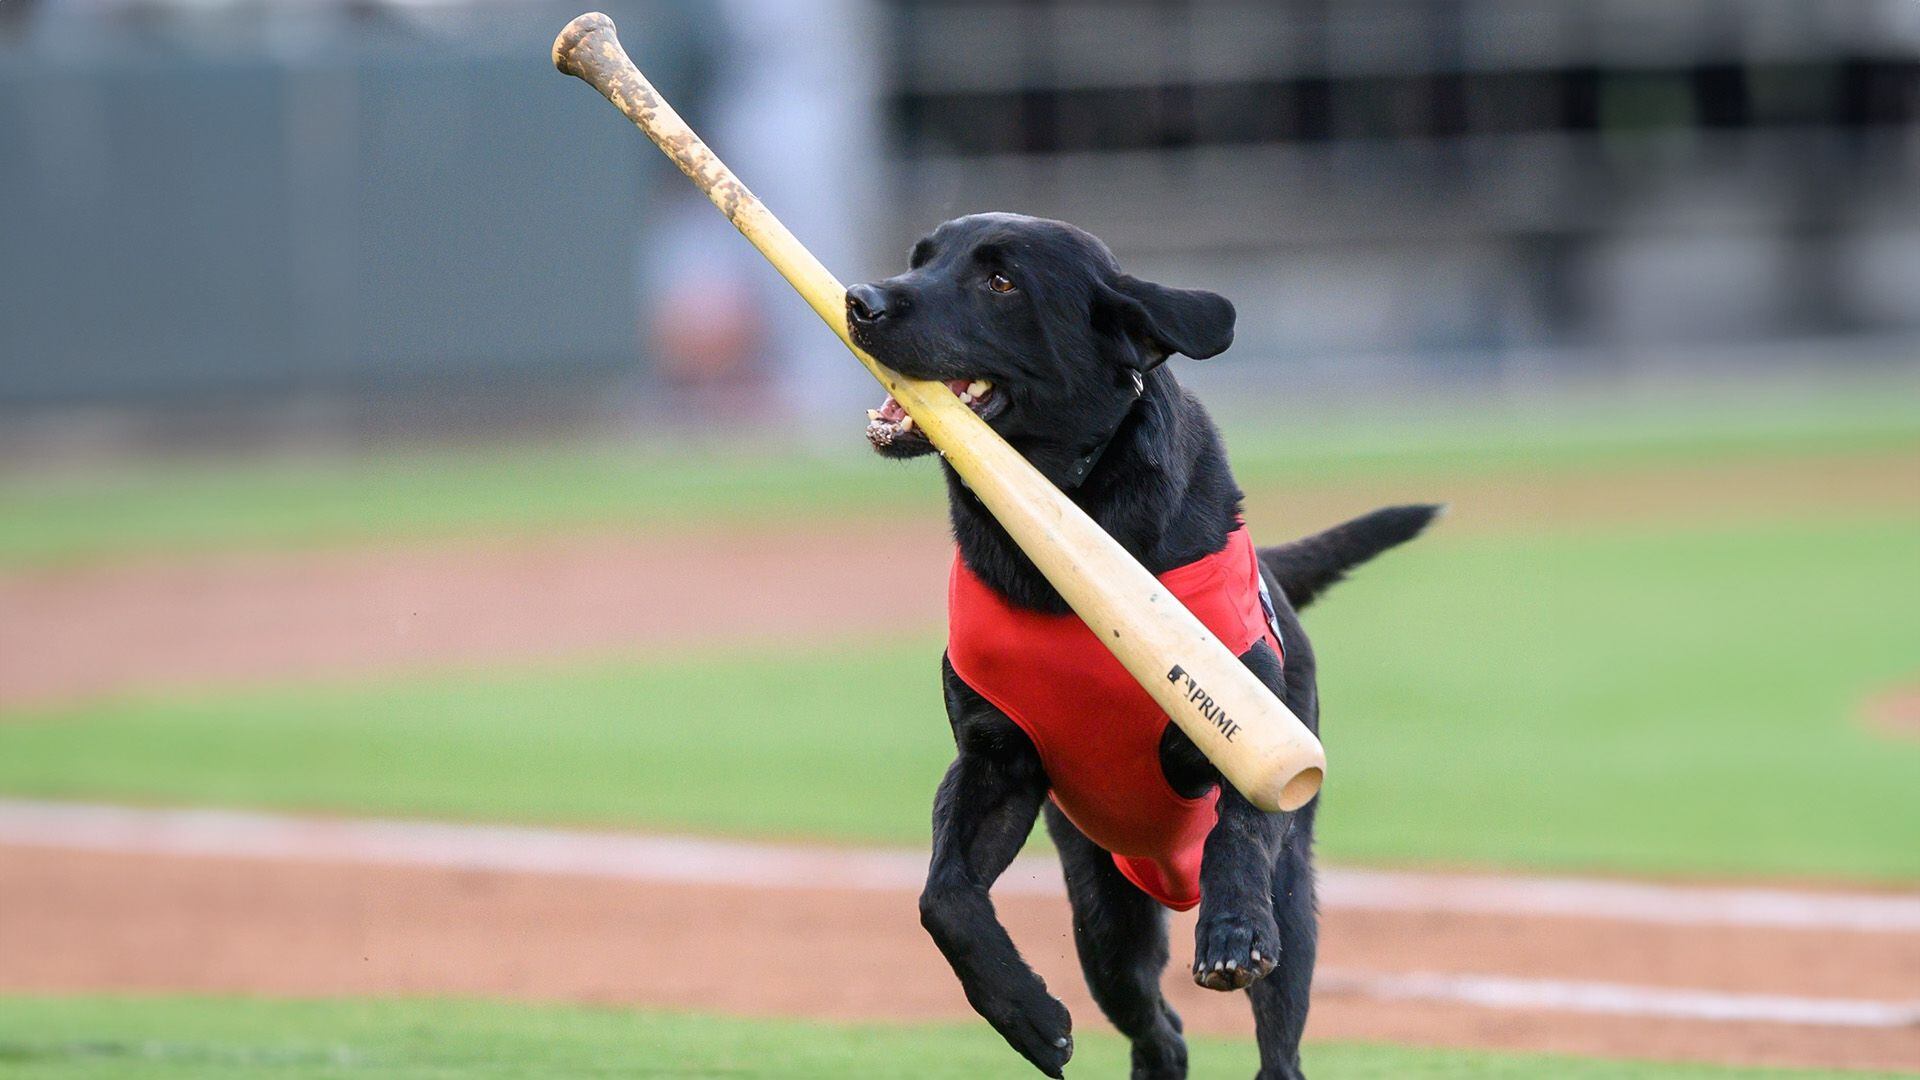 Finn the batdog, perros, razas de perros, perros recoge bates, animales, mascotas, noticias de animales, noticias de mascotas, ligas menores, MLB, beisbol